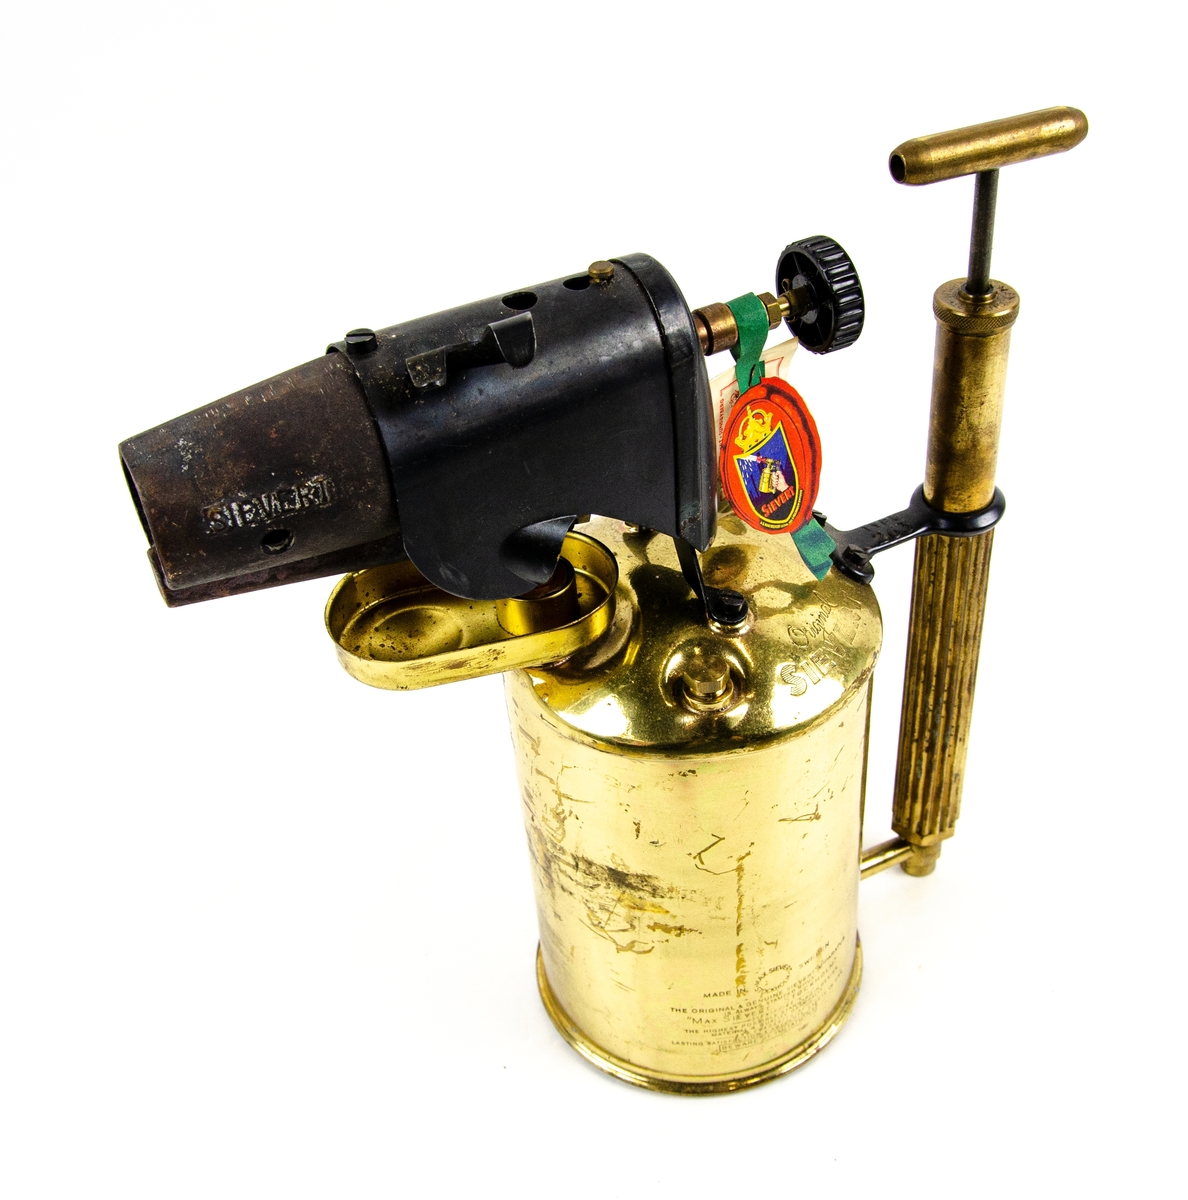 Blåslampa Max Sievert Typ 263, tillverkat i mässing och annan metall. Föremålet består av en 2 liters bensinbehållare i guld mässing, en handpump, och en vindskydd i svart metall. I föremålet finns det bruksanvisning till blåslampan.